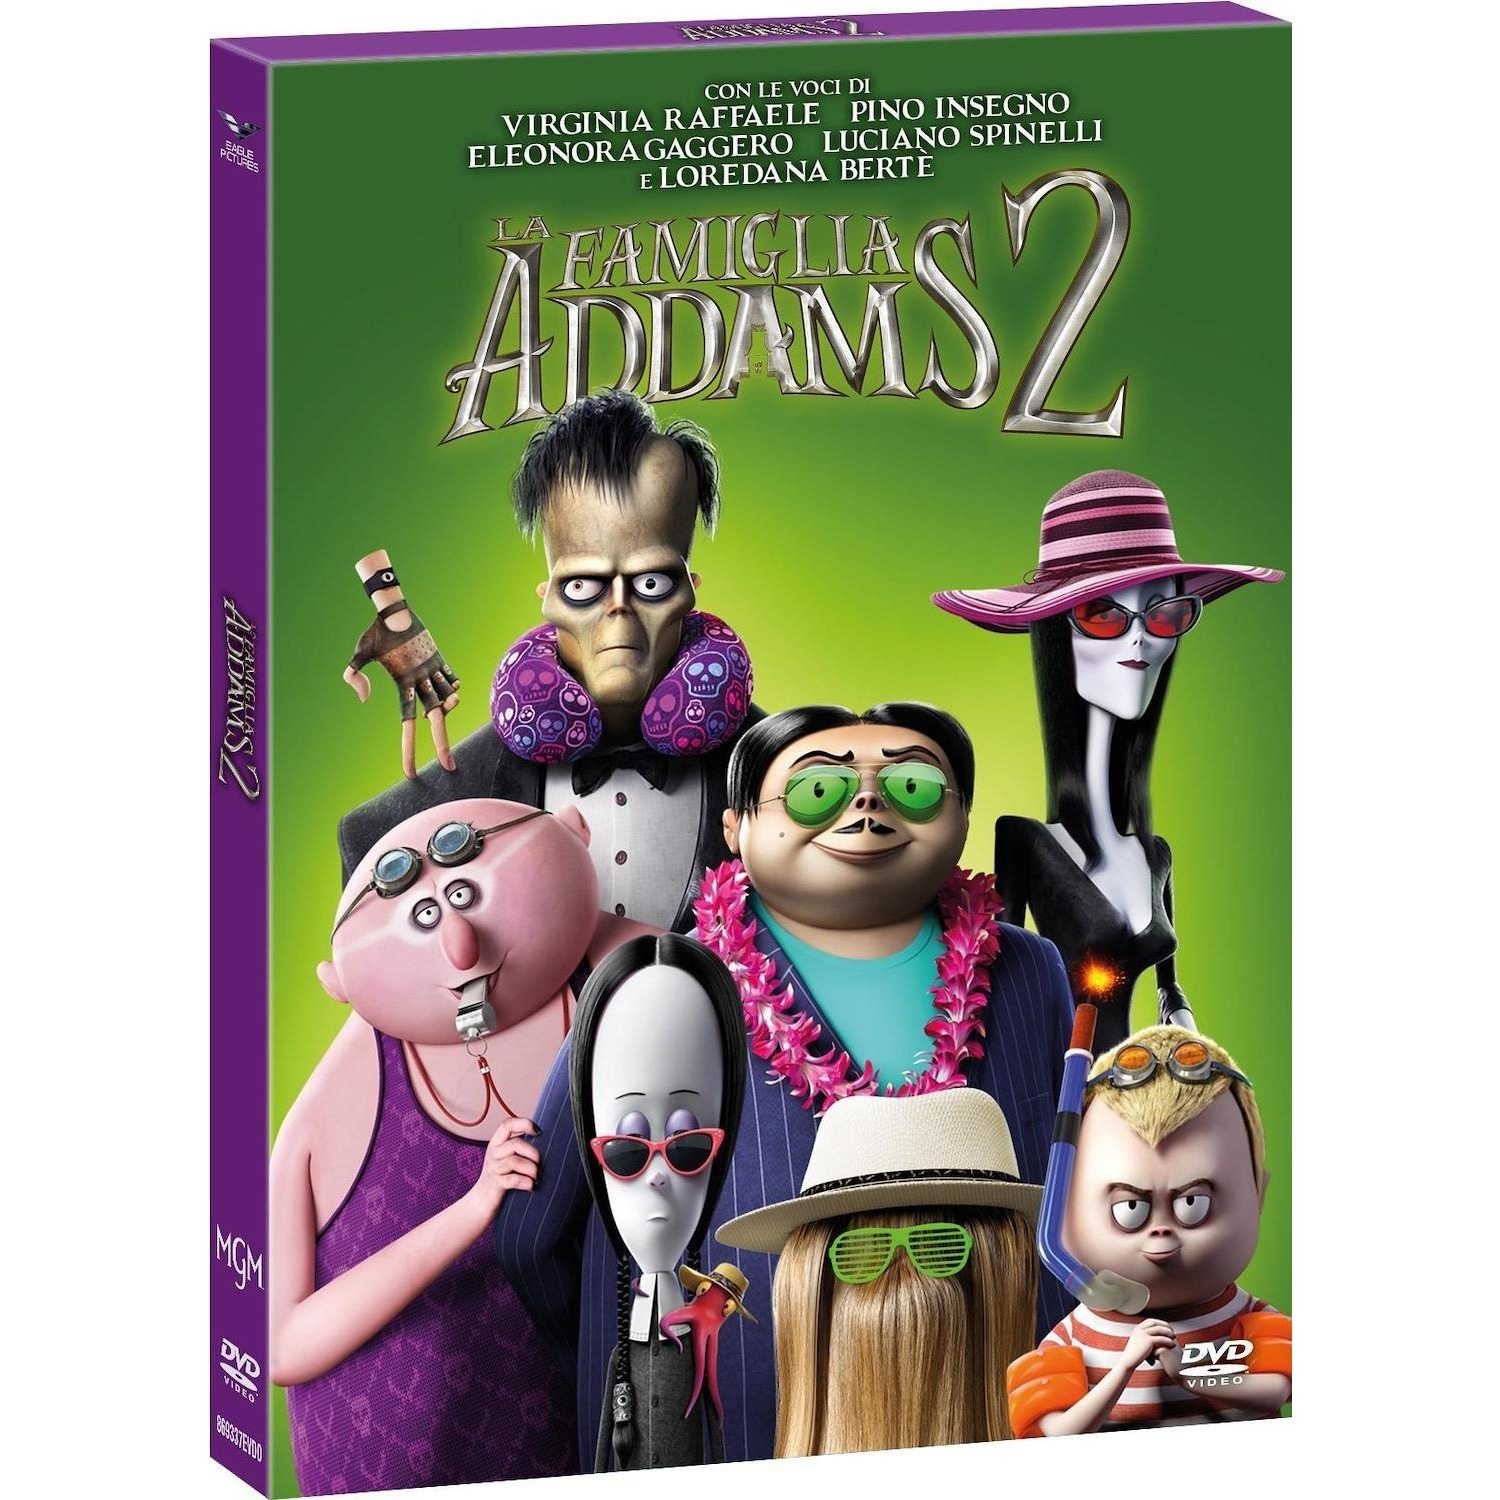 Immagine per DVD La Famiglia Addams 2 da DIMOStore